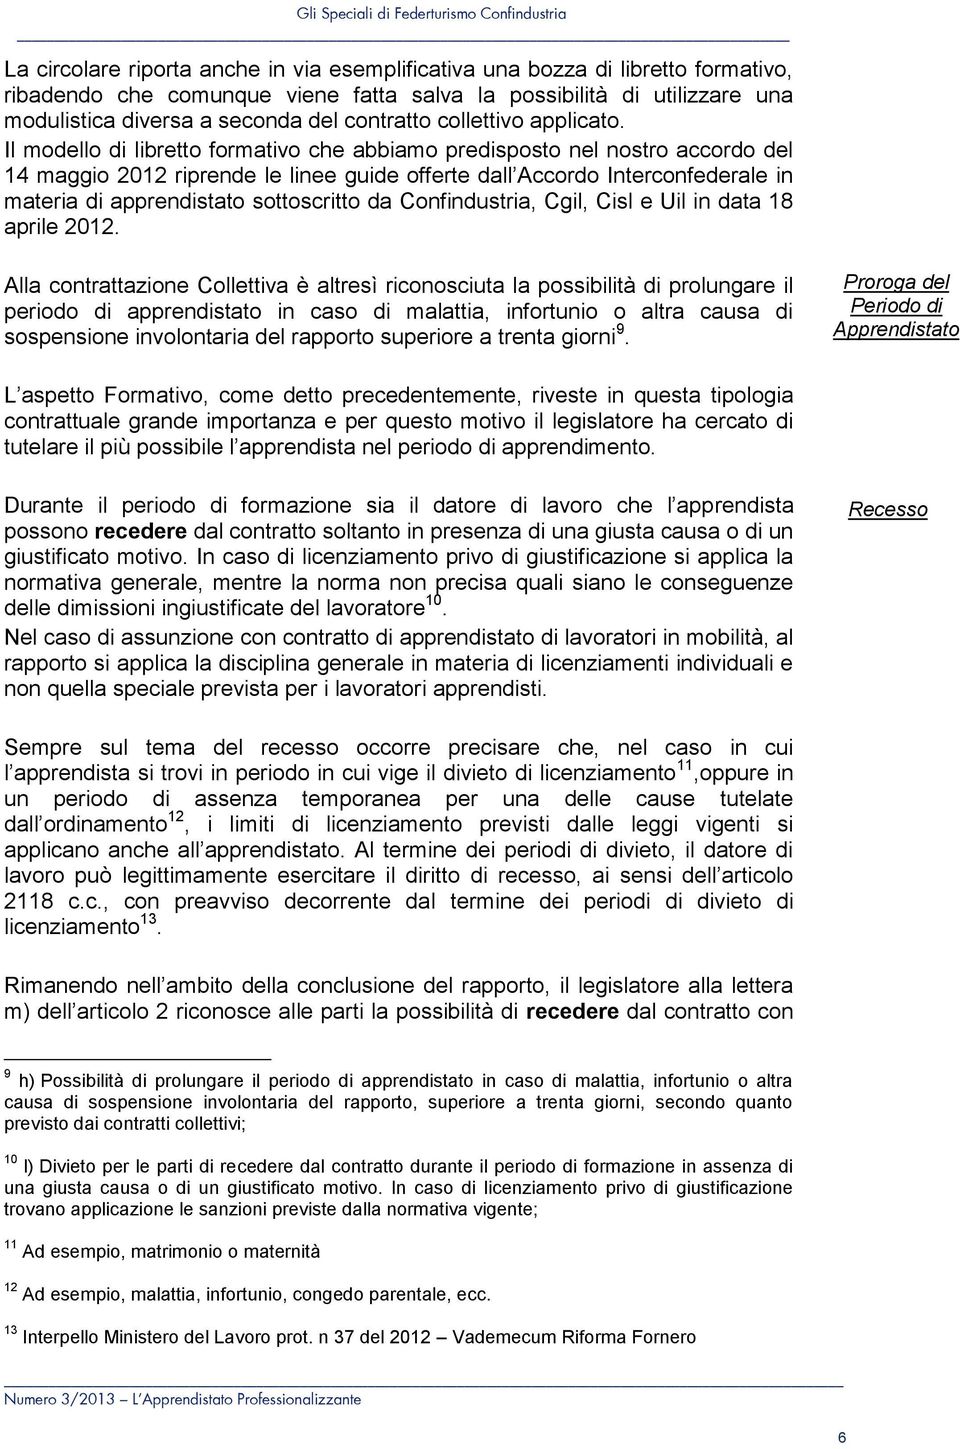 Il modello di libretto formativo che abbiamo predisposto nel nostro accordo del 14 maggio 2012 riprende le linee guide offerte dall Accordo Interconfederale in materia di apprendistato sottoscritto